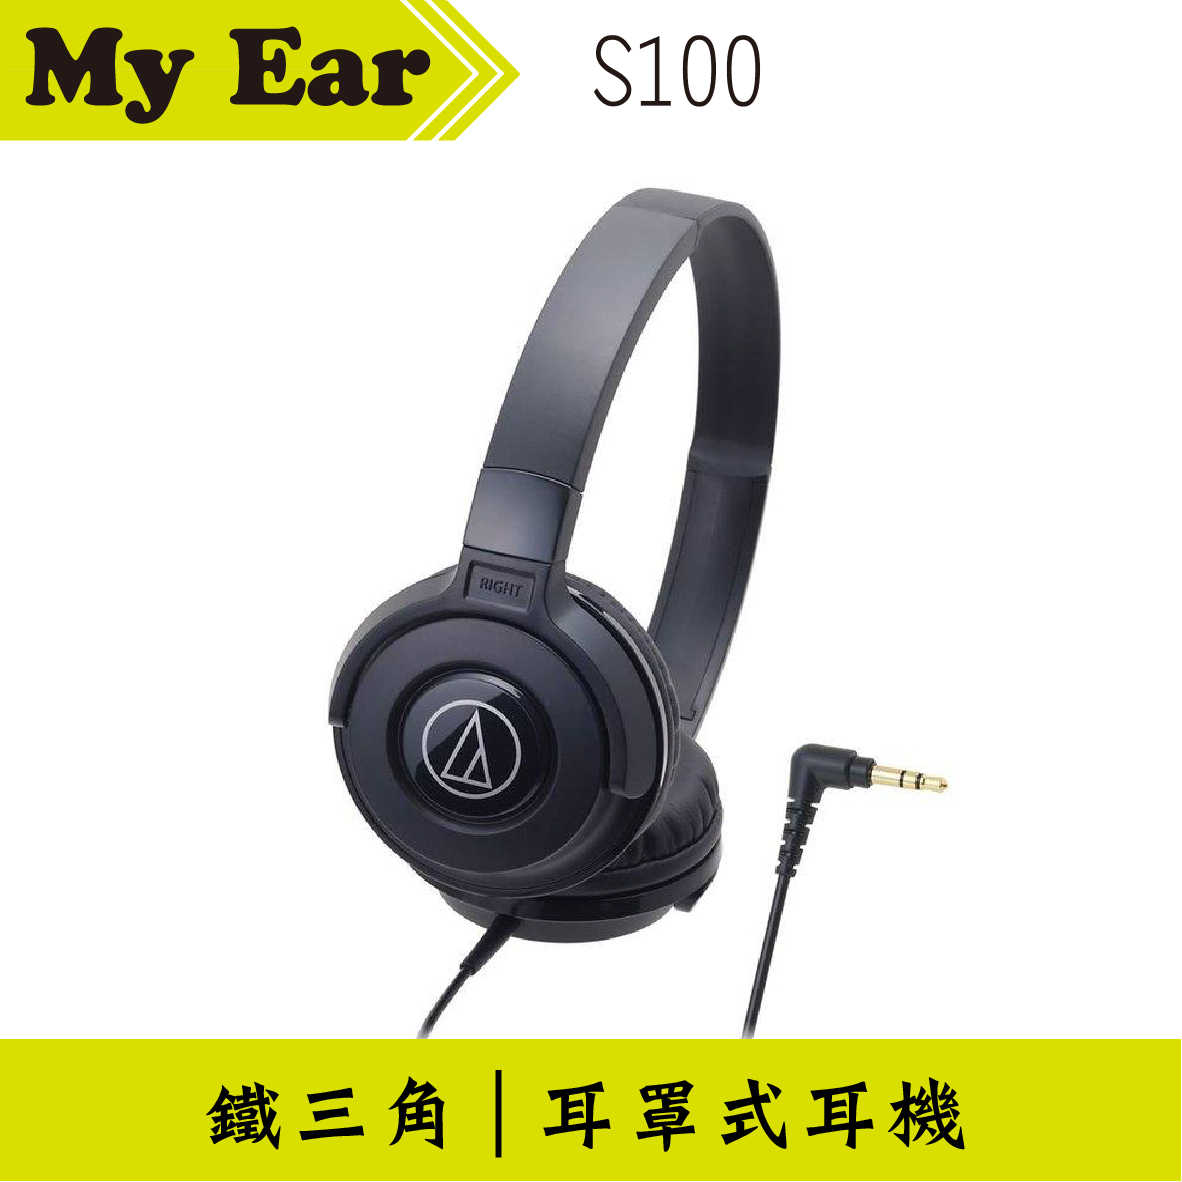 鐵三角 ATH-S100 耳罩式耳機 黑色 | My Ear 耳機專門店